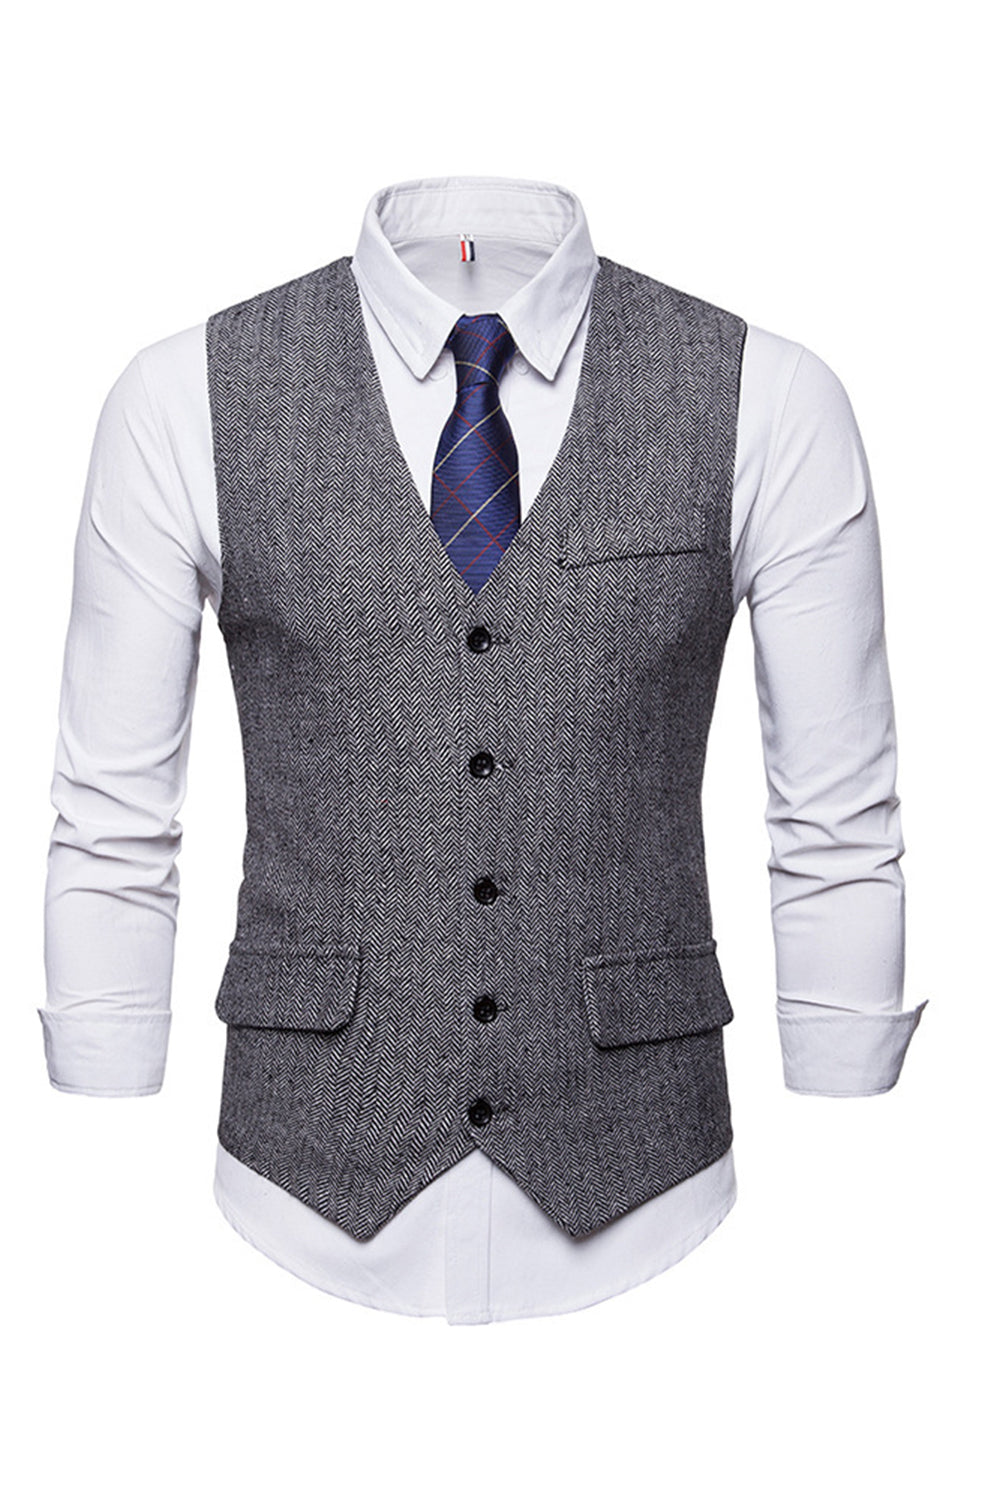 Single Breasted V-Neck Black Men's Suit Vests